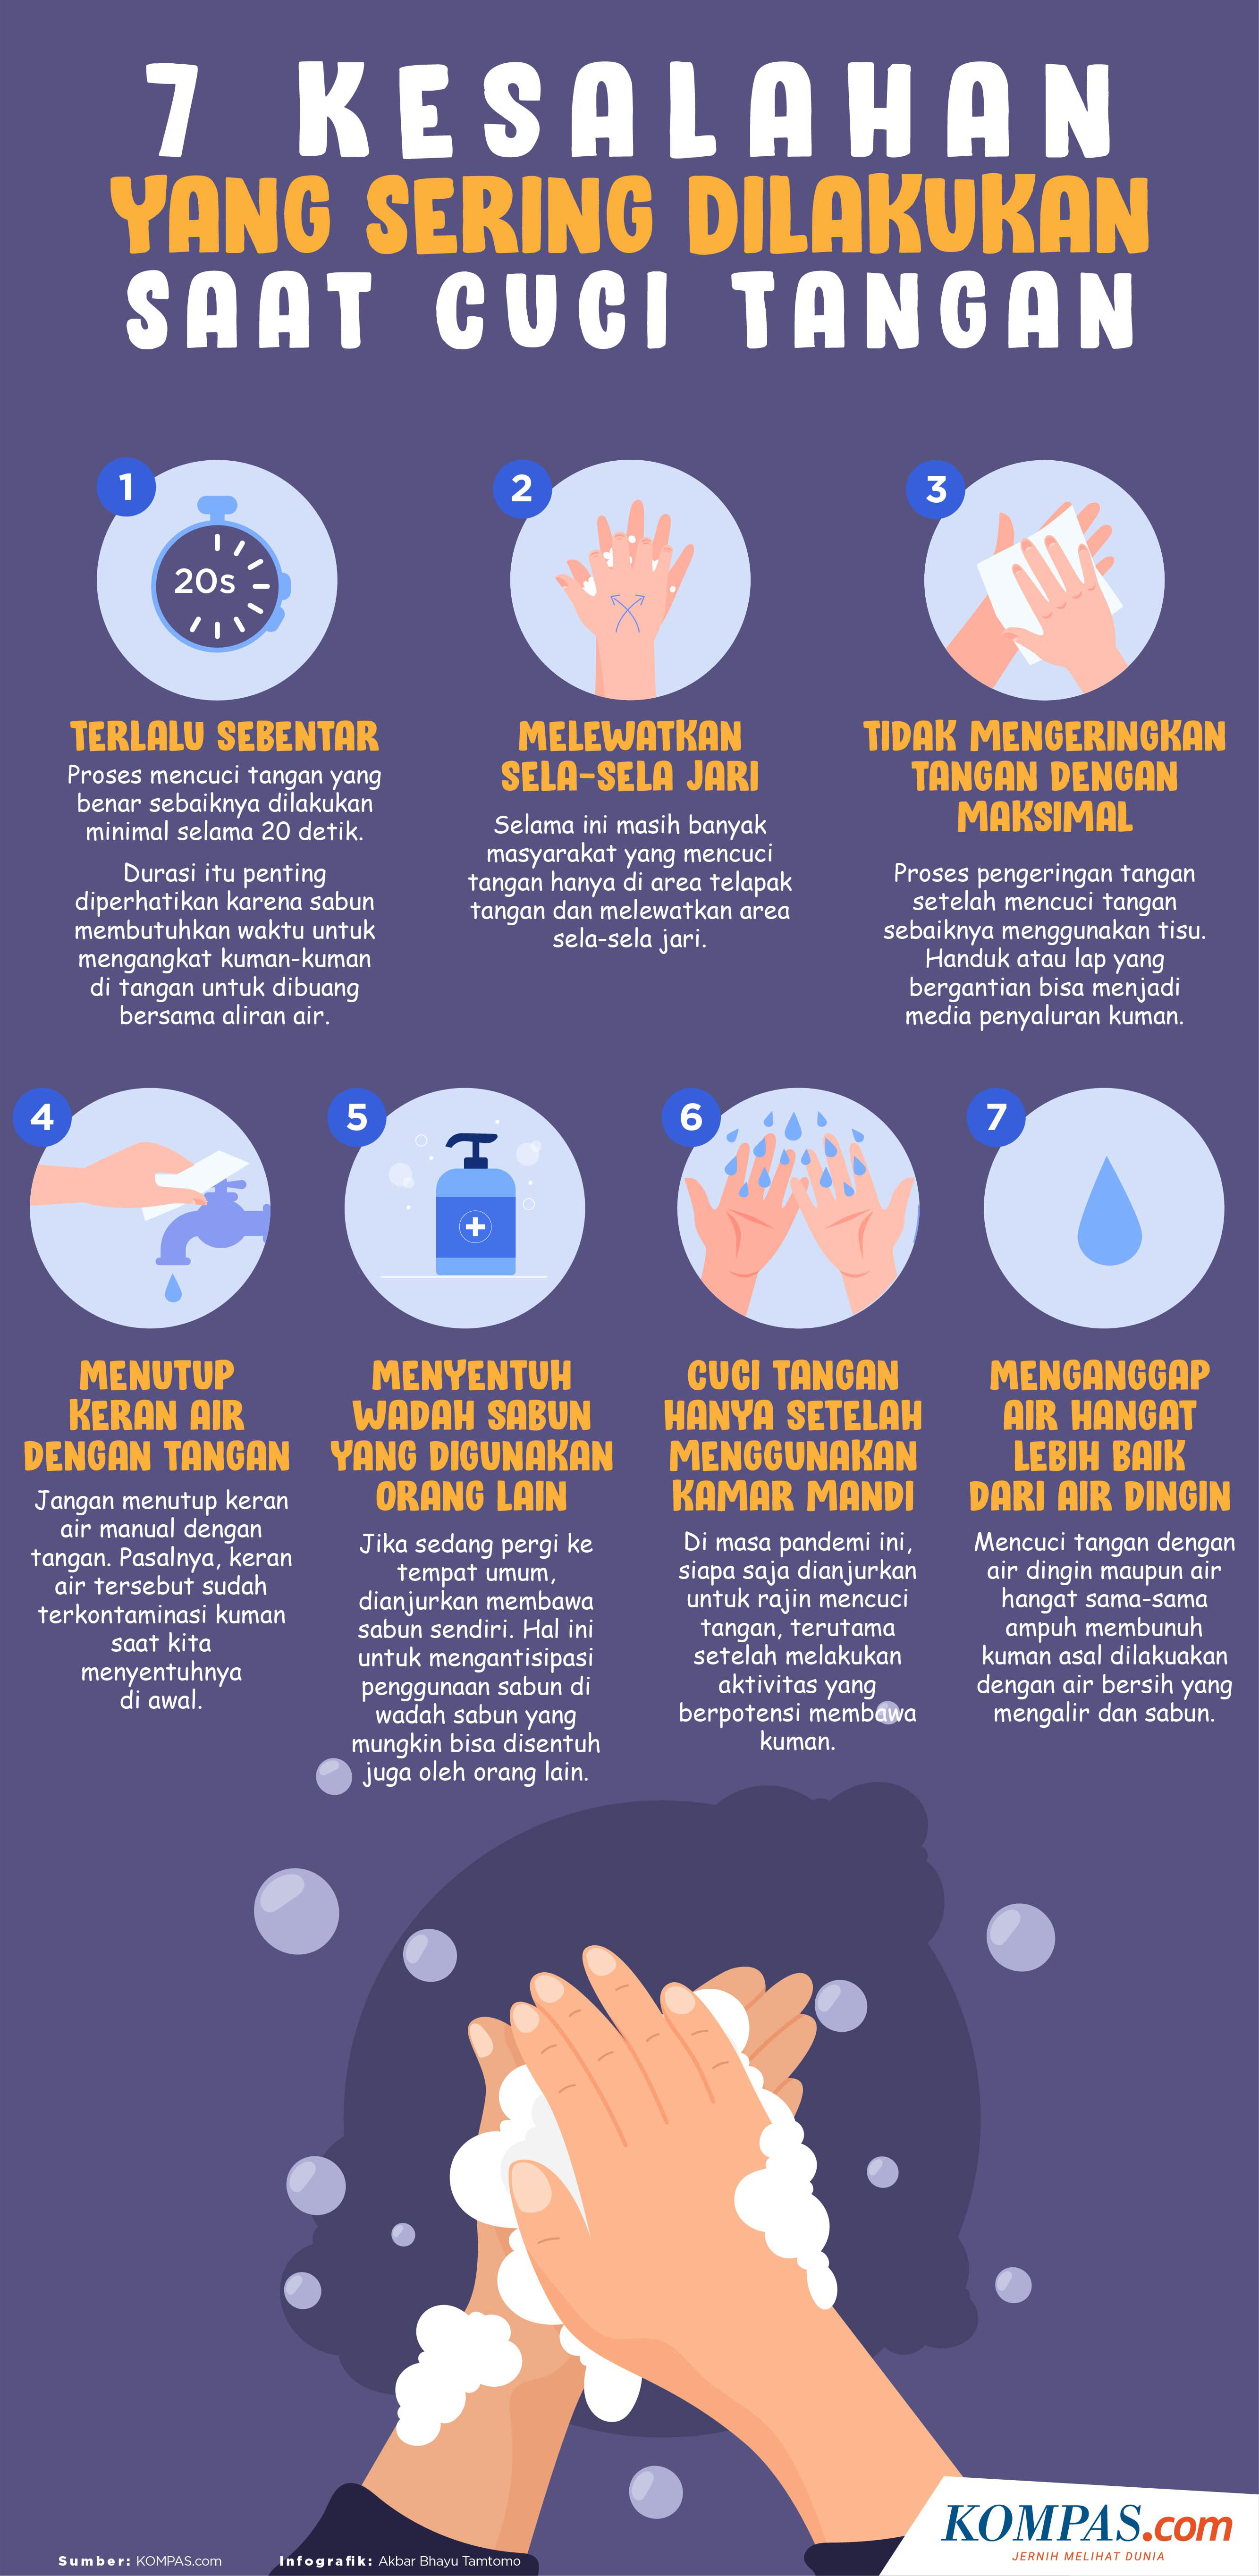 Simak Ini Perbedaan Langkah Mencuci Tangan Dengan Sabun Dan Hand Sanitizer Halaman All Kompas Com